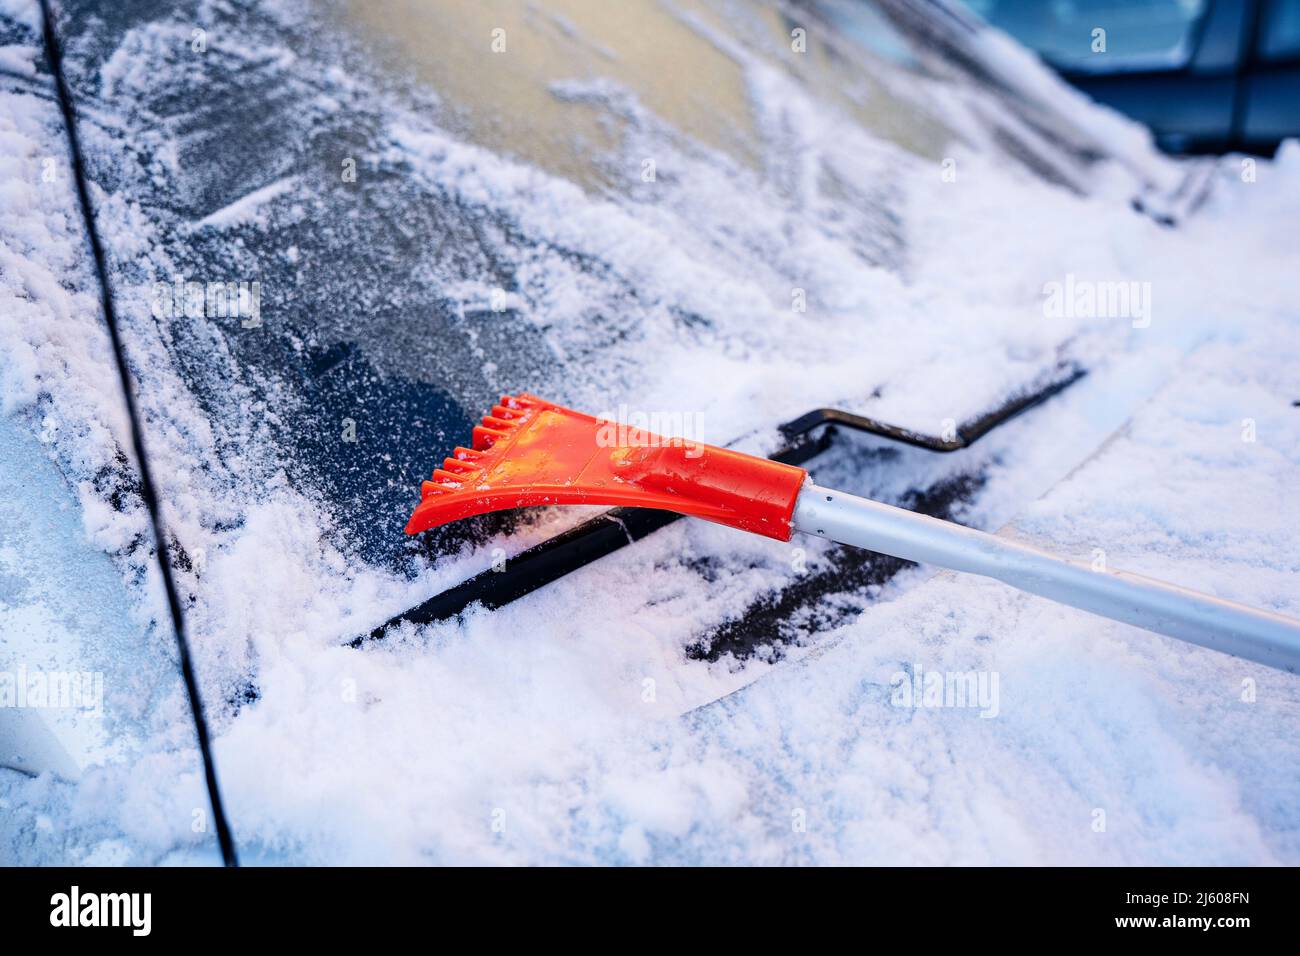 Auto-Bürstenschaber zum Reinigen des Autos von Schnee und Eis  Stockfotografie - Alamy